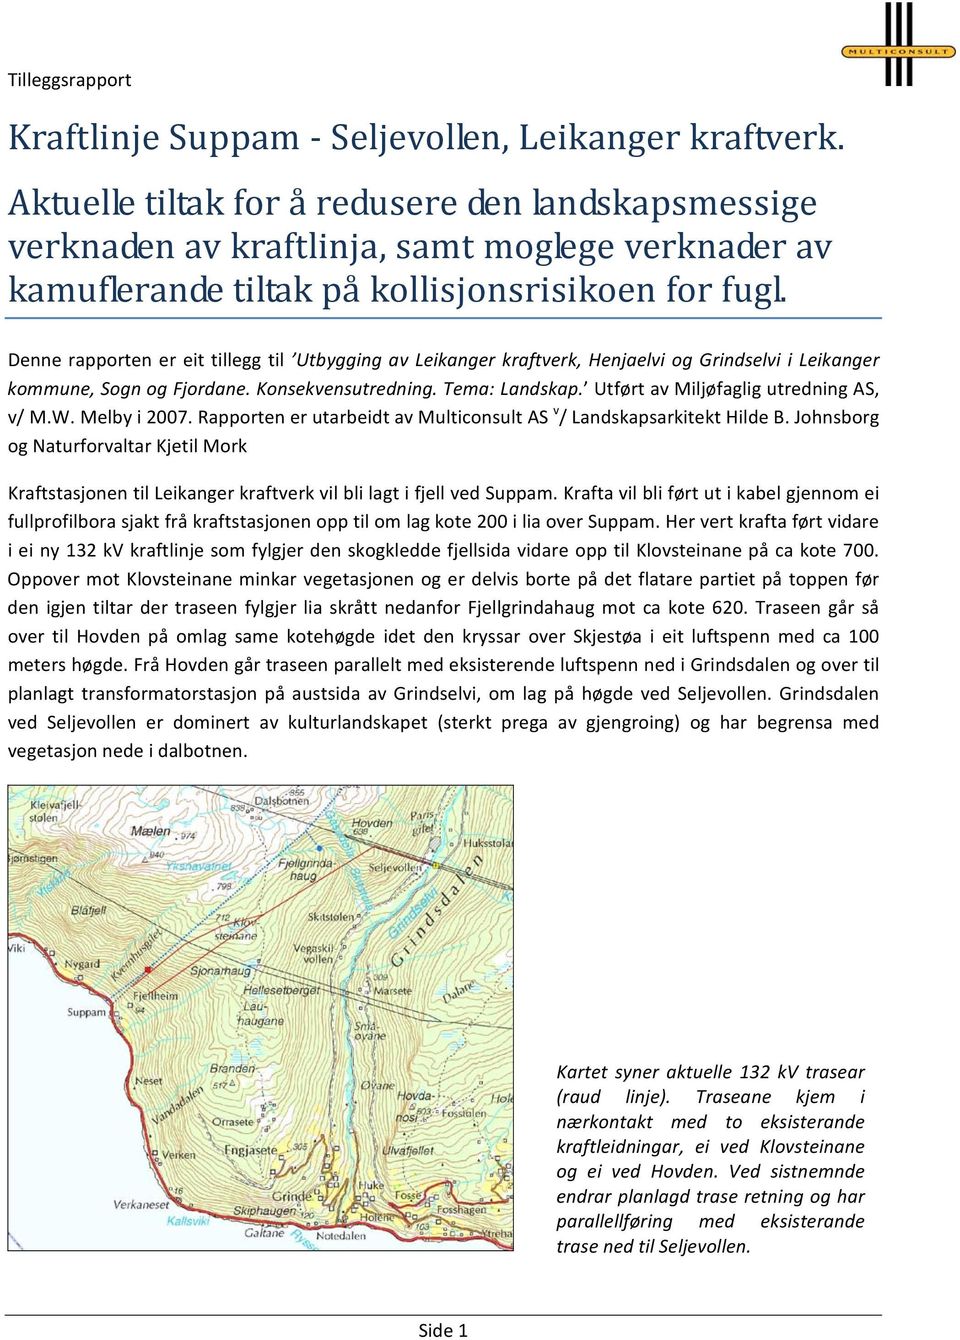 Denne rapporten er eit tillegg til Utbygging av Leikanger kraftverk, Henjaelvi og Grindselvi i Leikanger kommune, Sogn og Fjordane. Konsekvensutredning. Tema: Landskap.